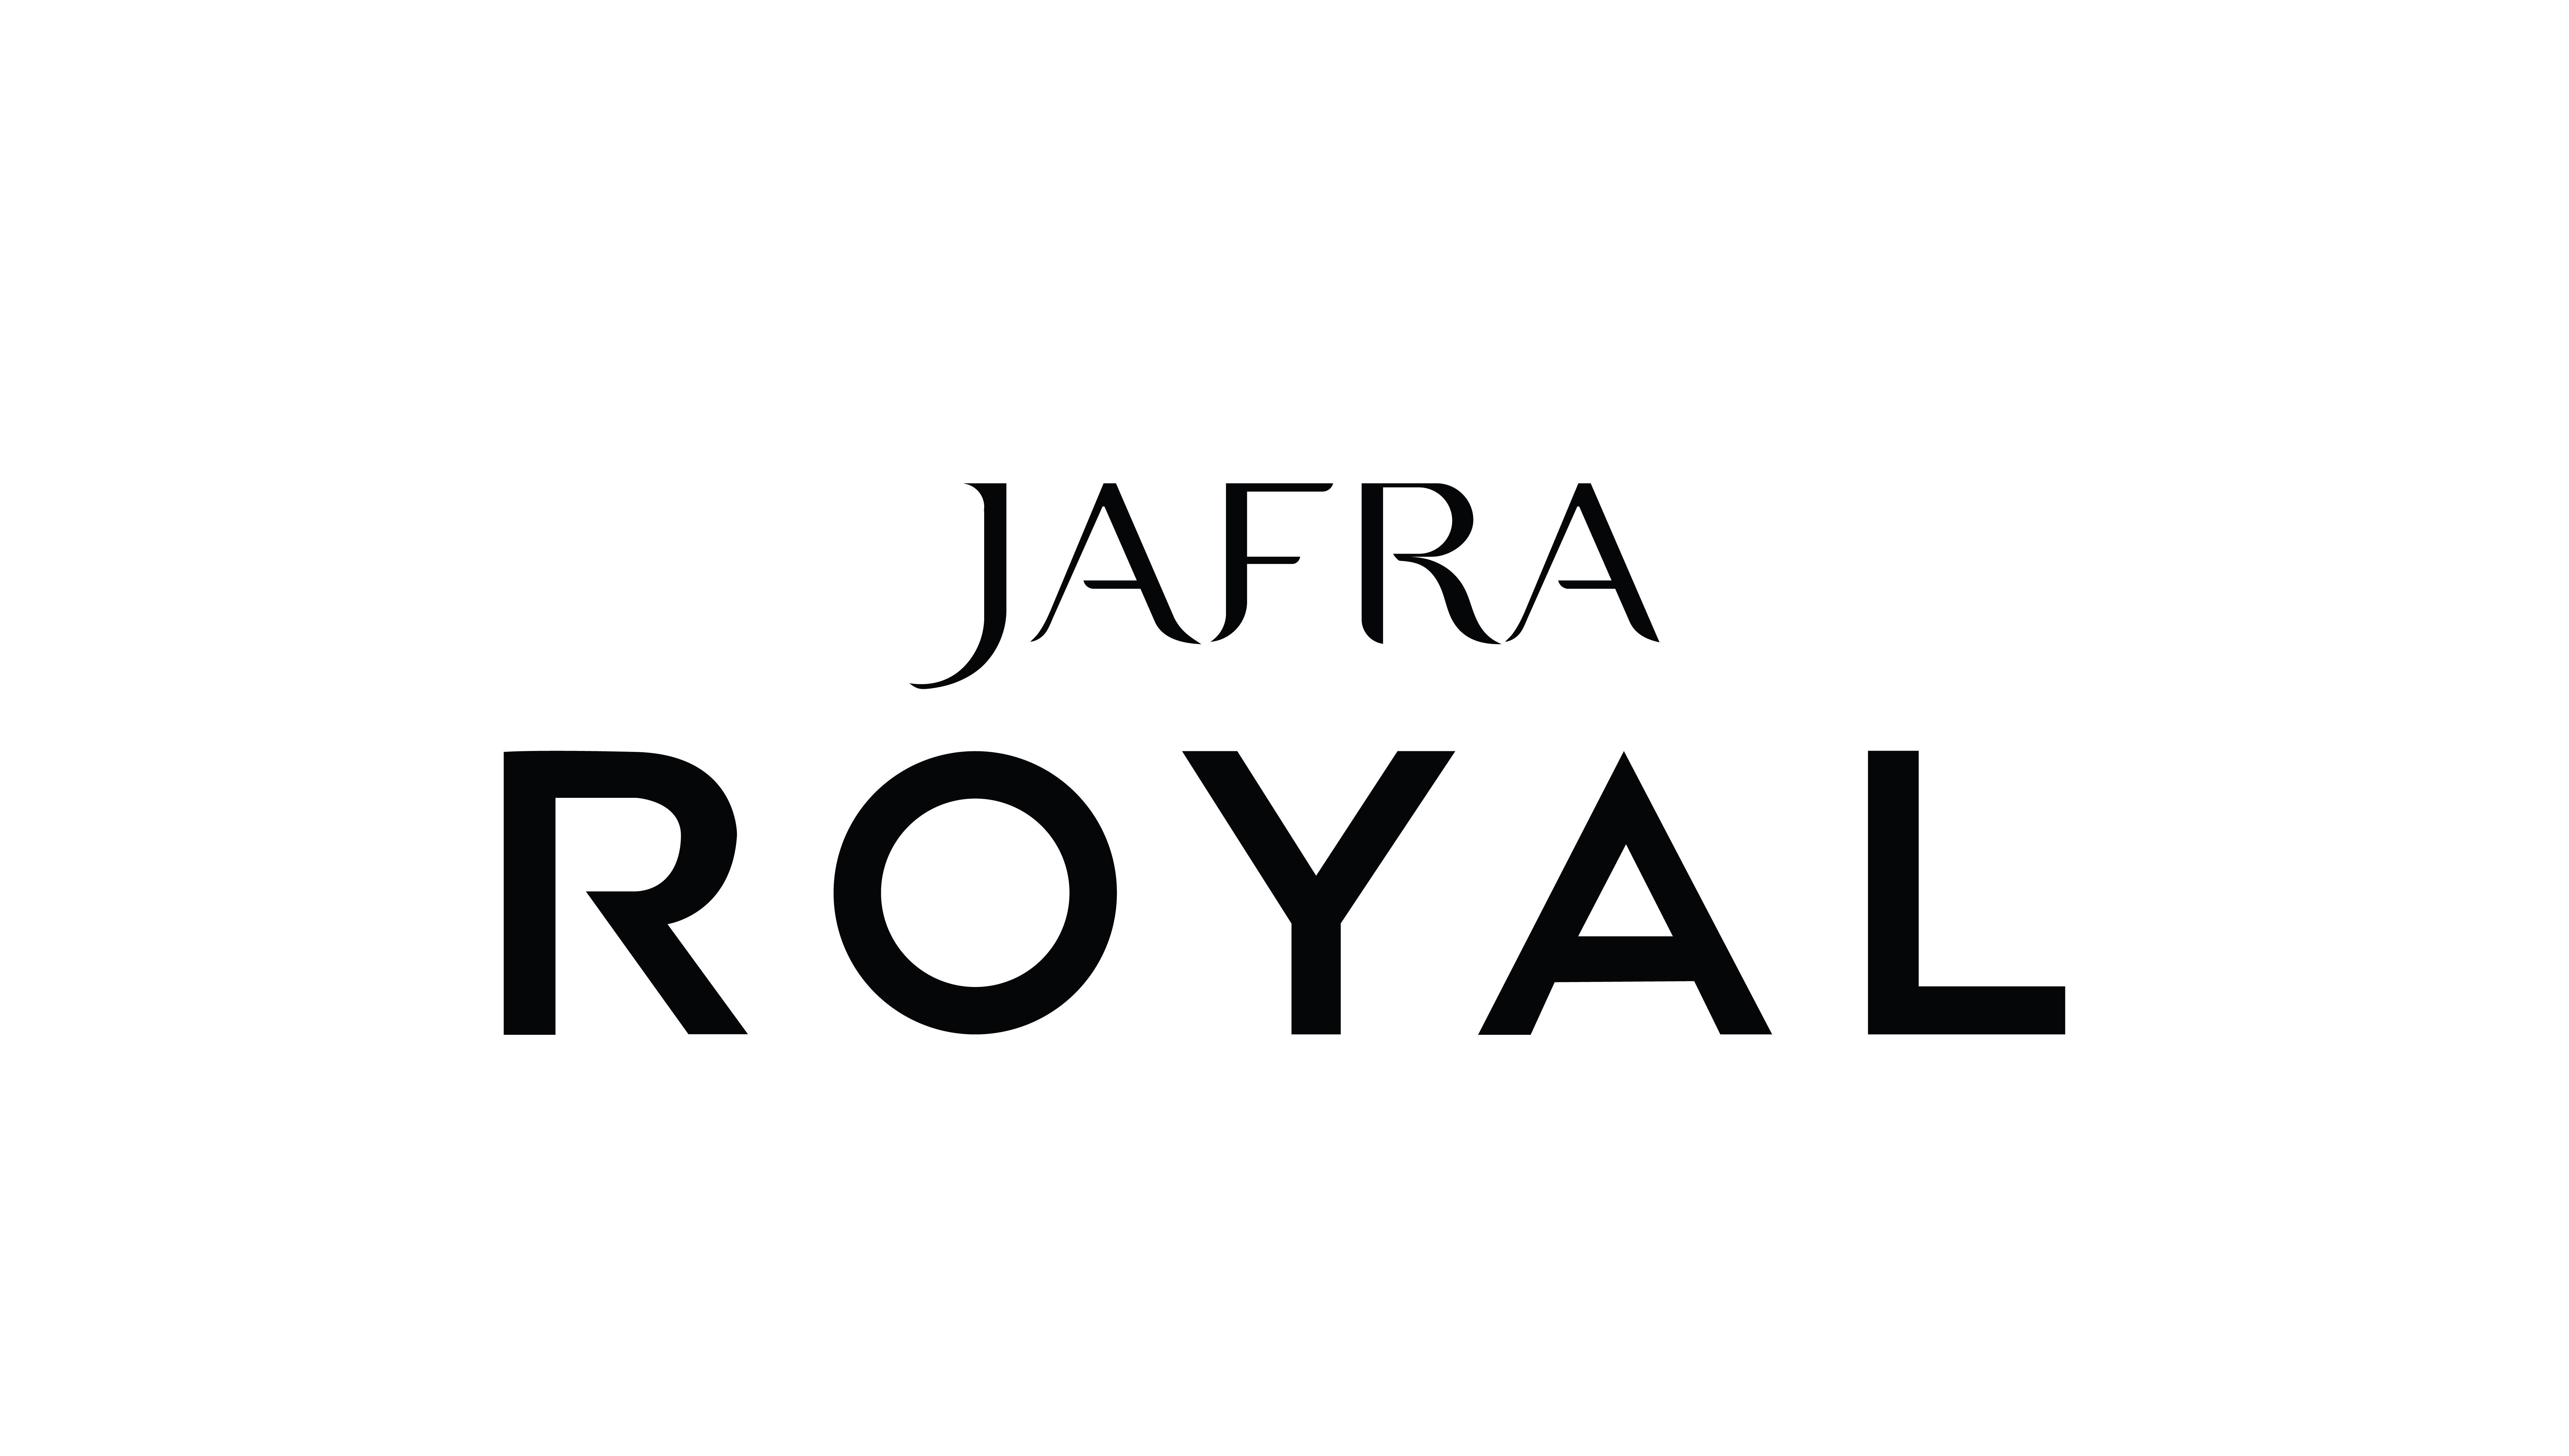 JAFRA Logo - File:Jafra Royal.jpg - Wikimedia Commons